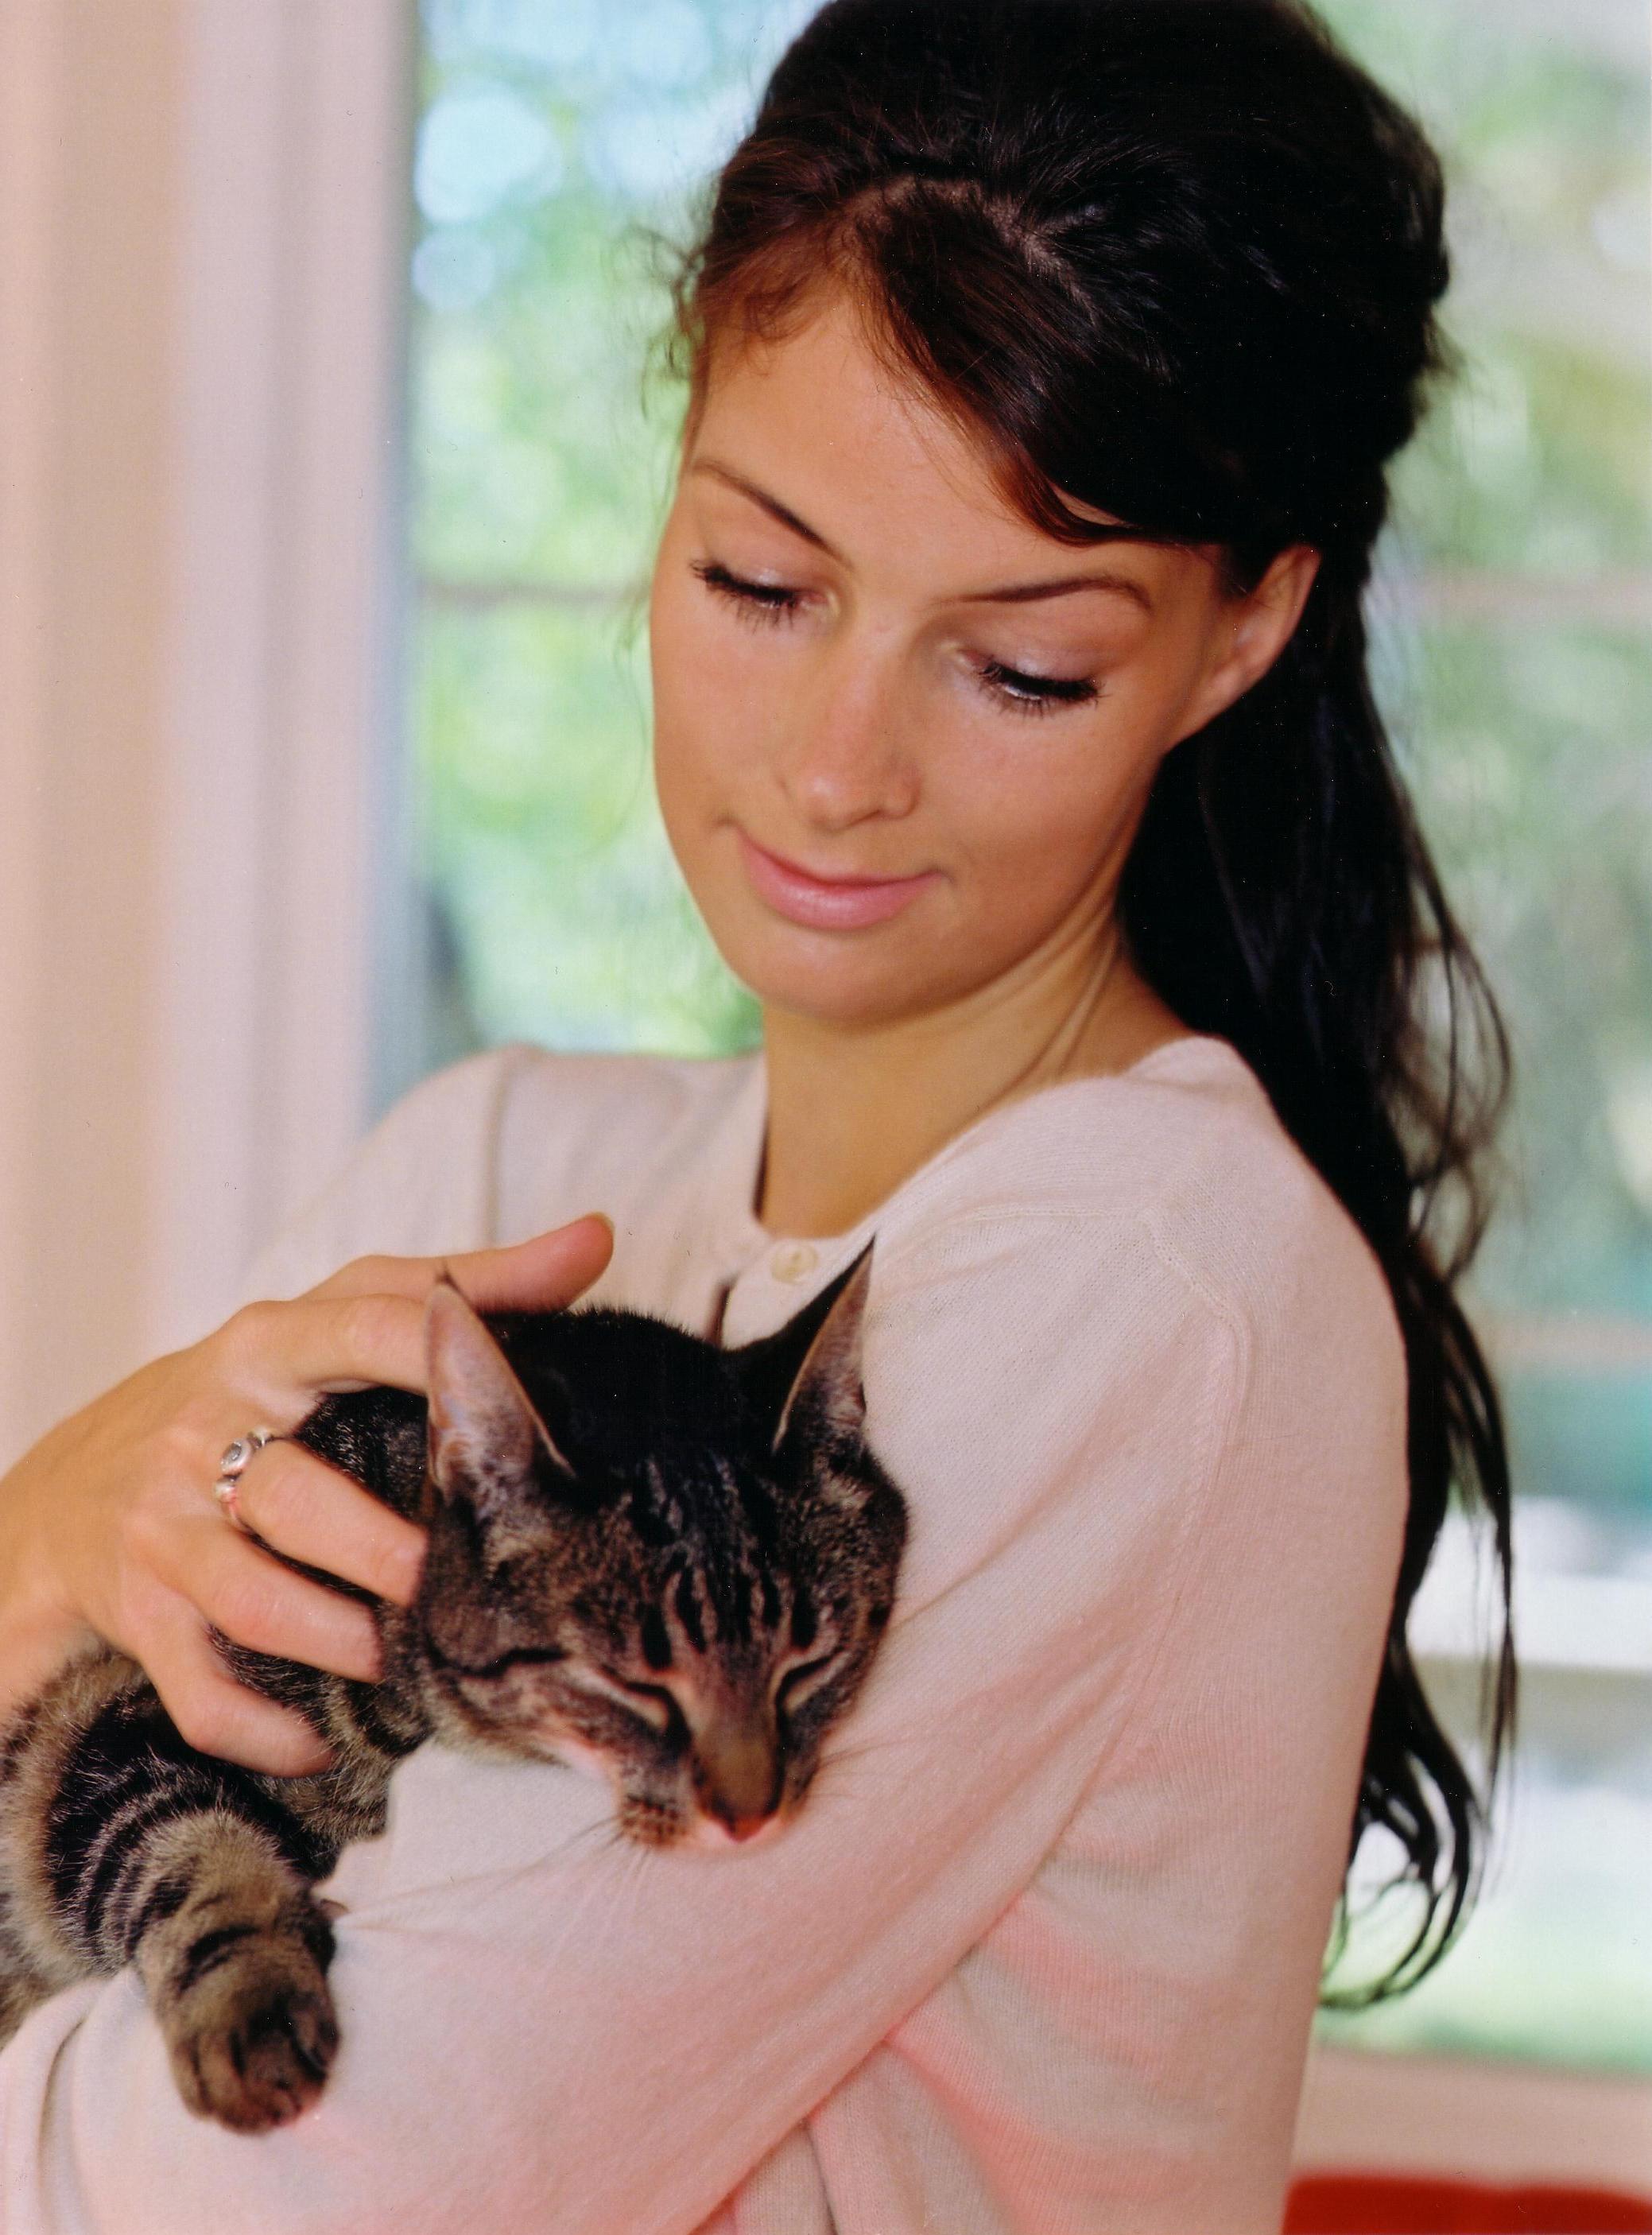 Singles mit Katzen: Finden sie leichter einen Partner?